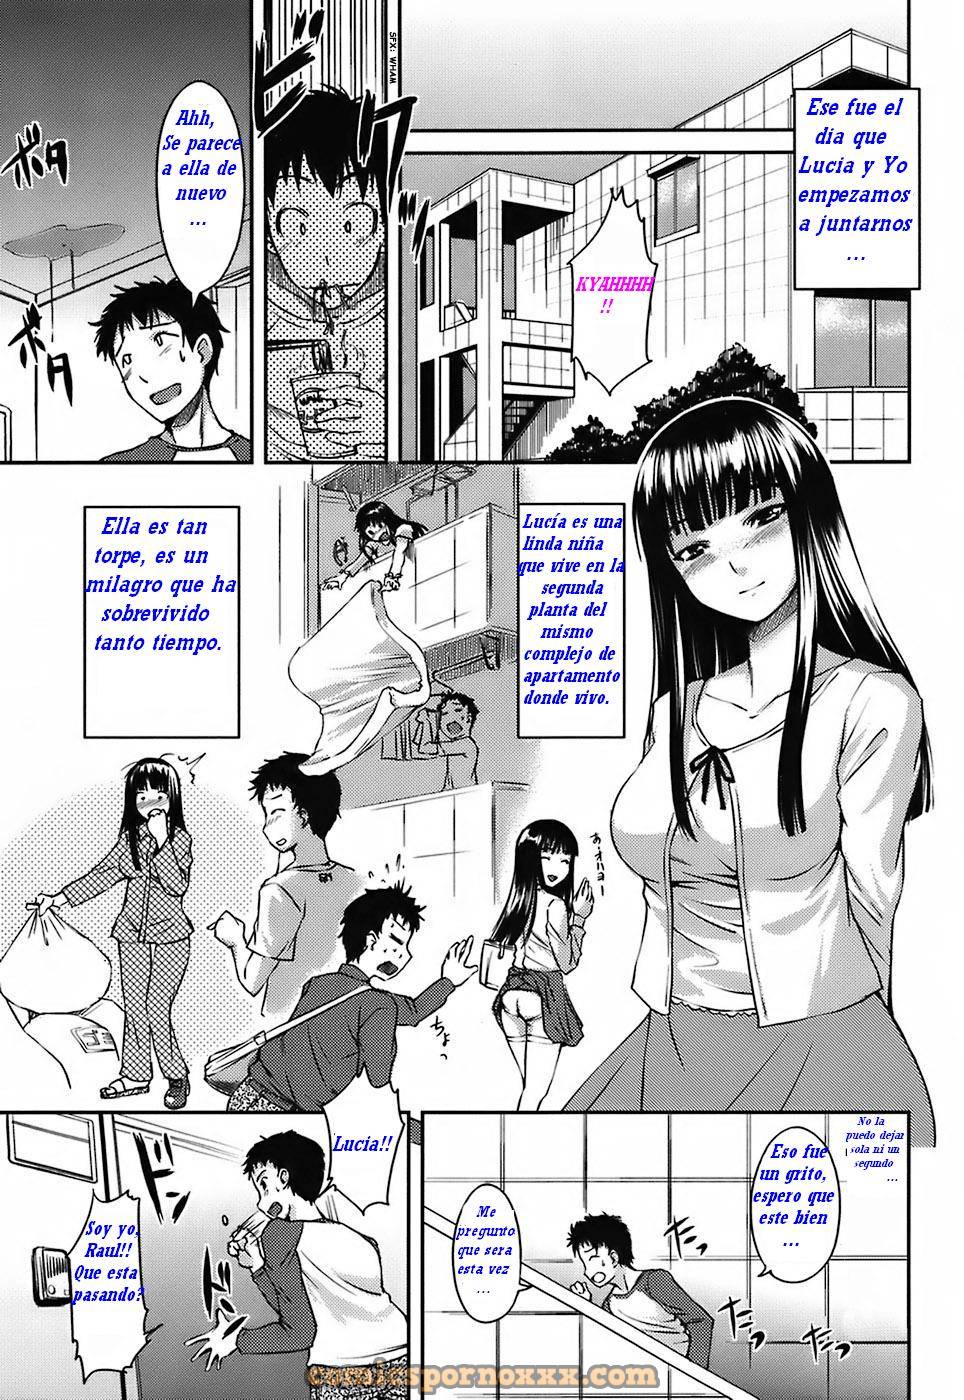 Problema Electrico y de Agua - 10 - Comics Porno - Hentai Manga - Cartoon XXX